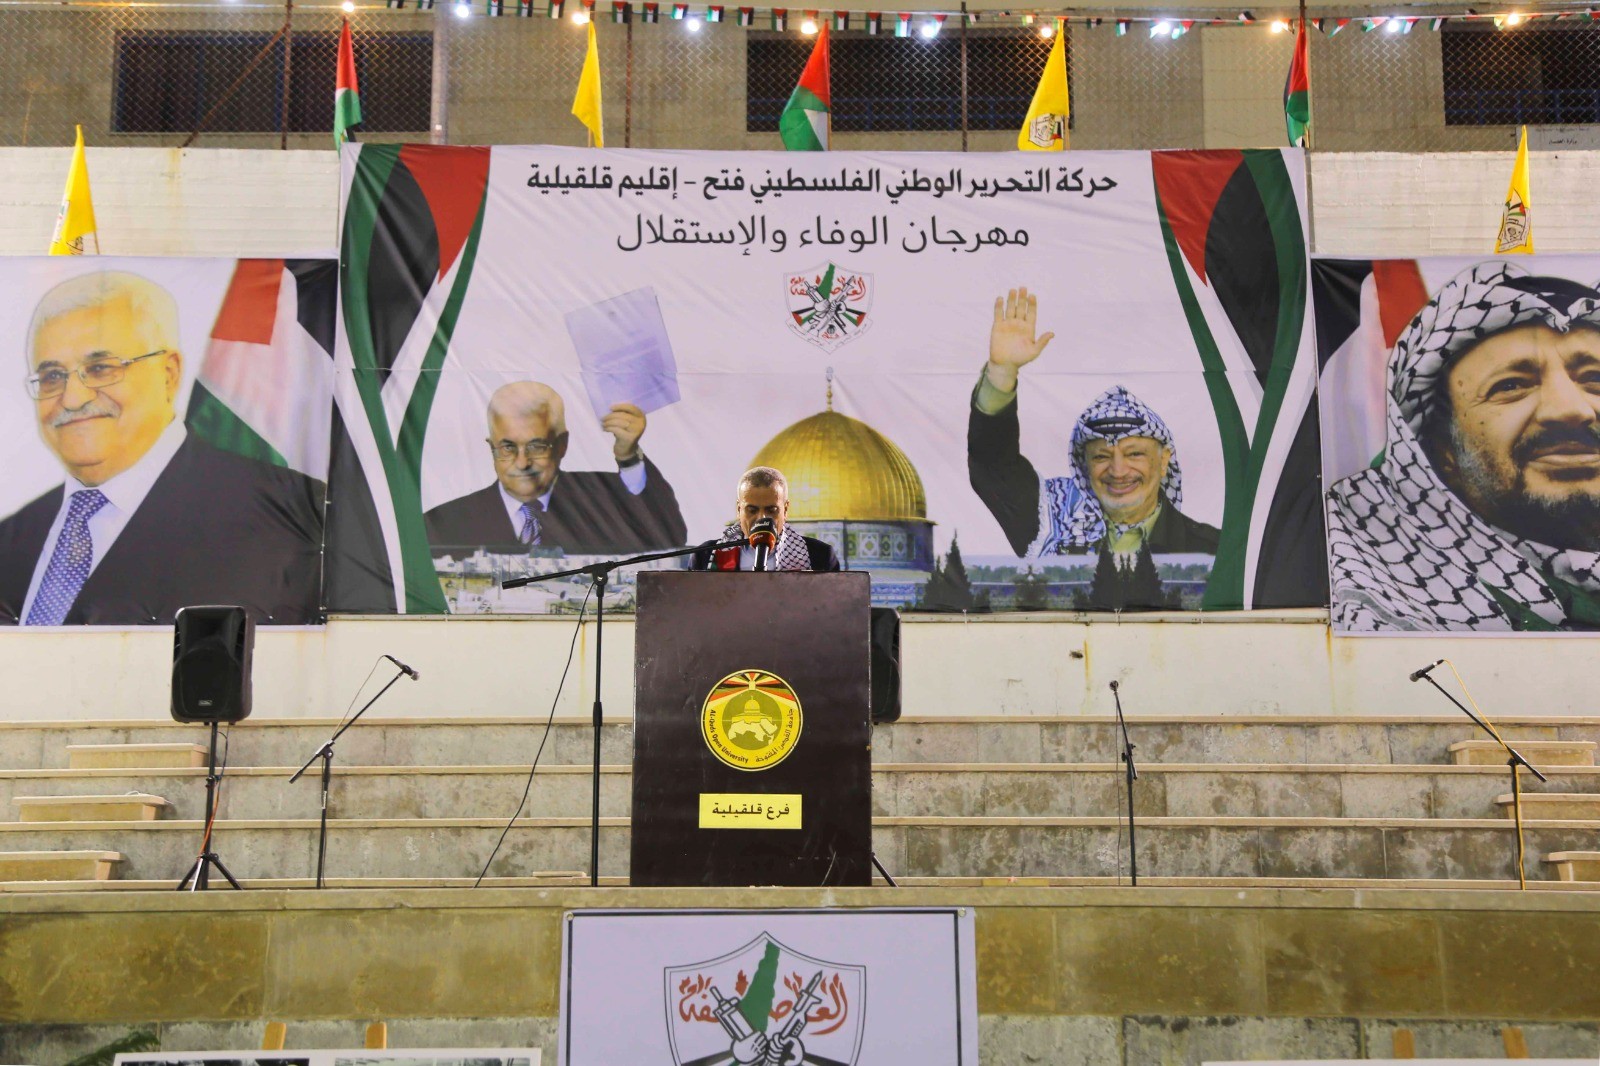 حركة فتح تحيي الذكرى الثامنة عشر لاستشهاد الرئيس عرفات.jpg